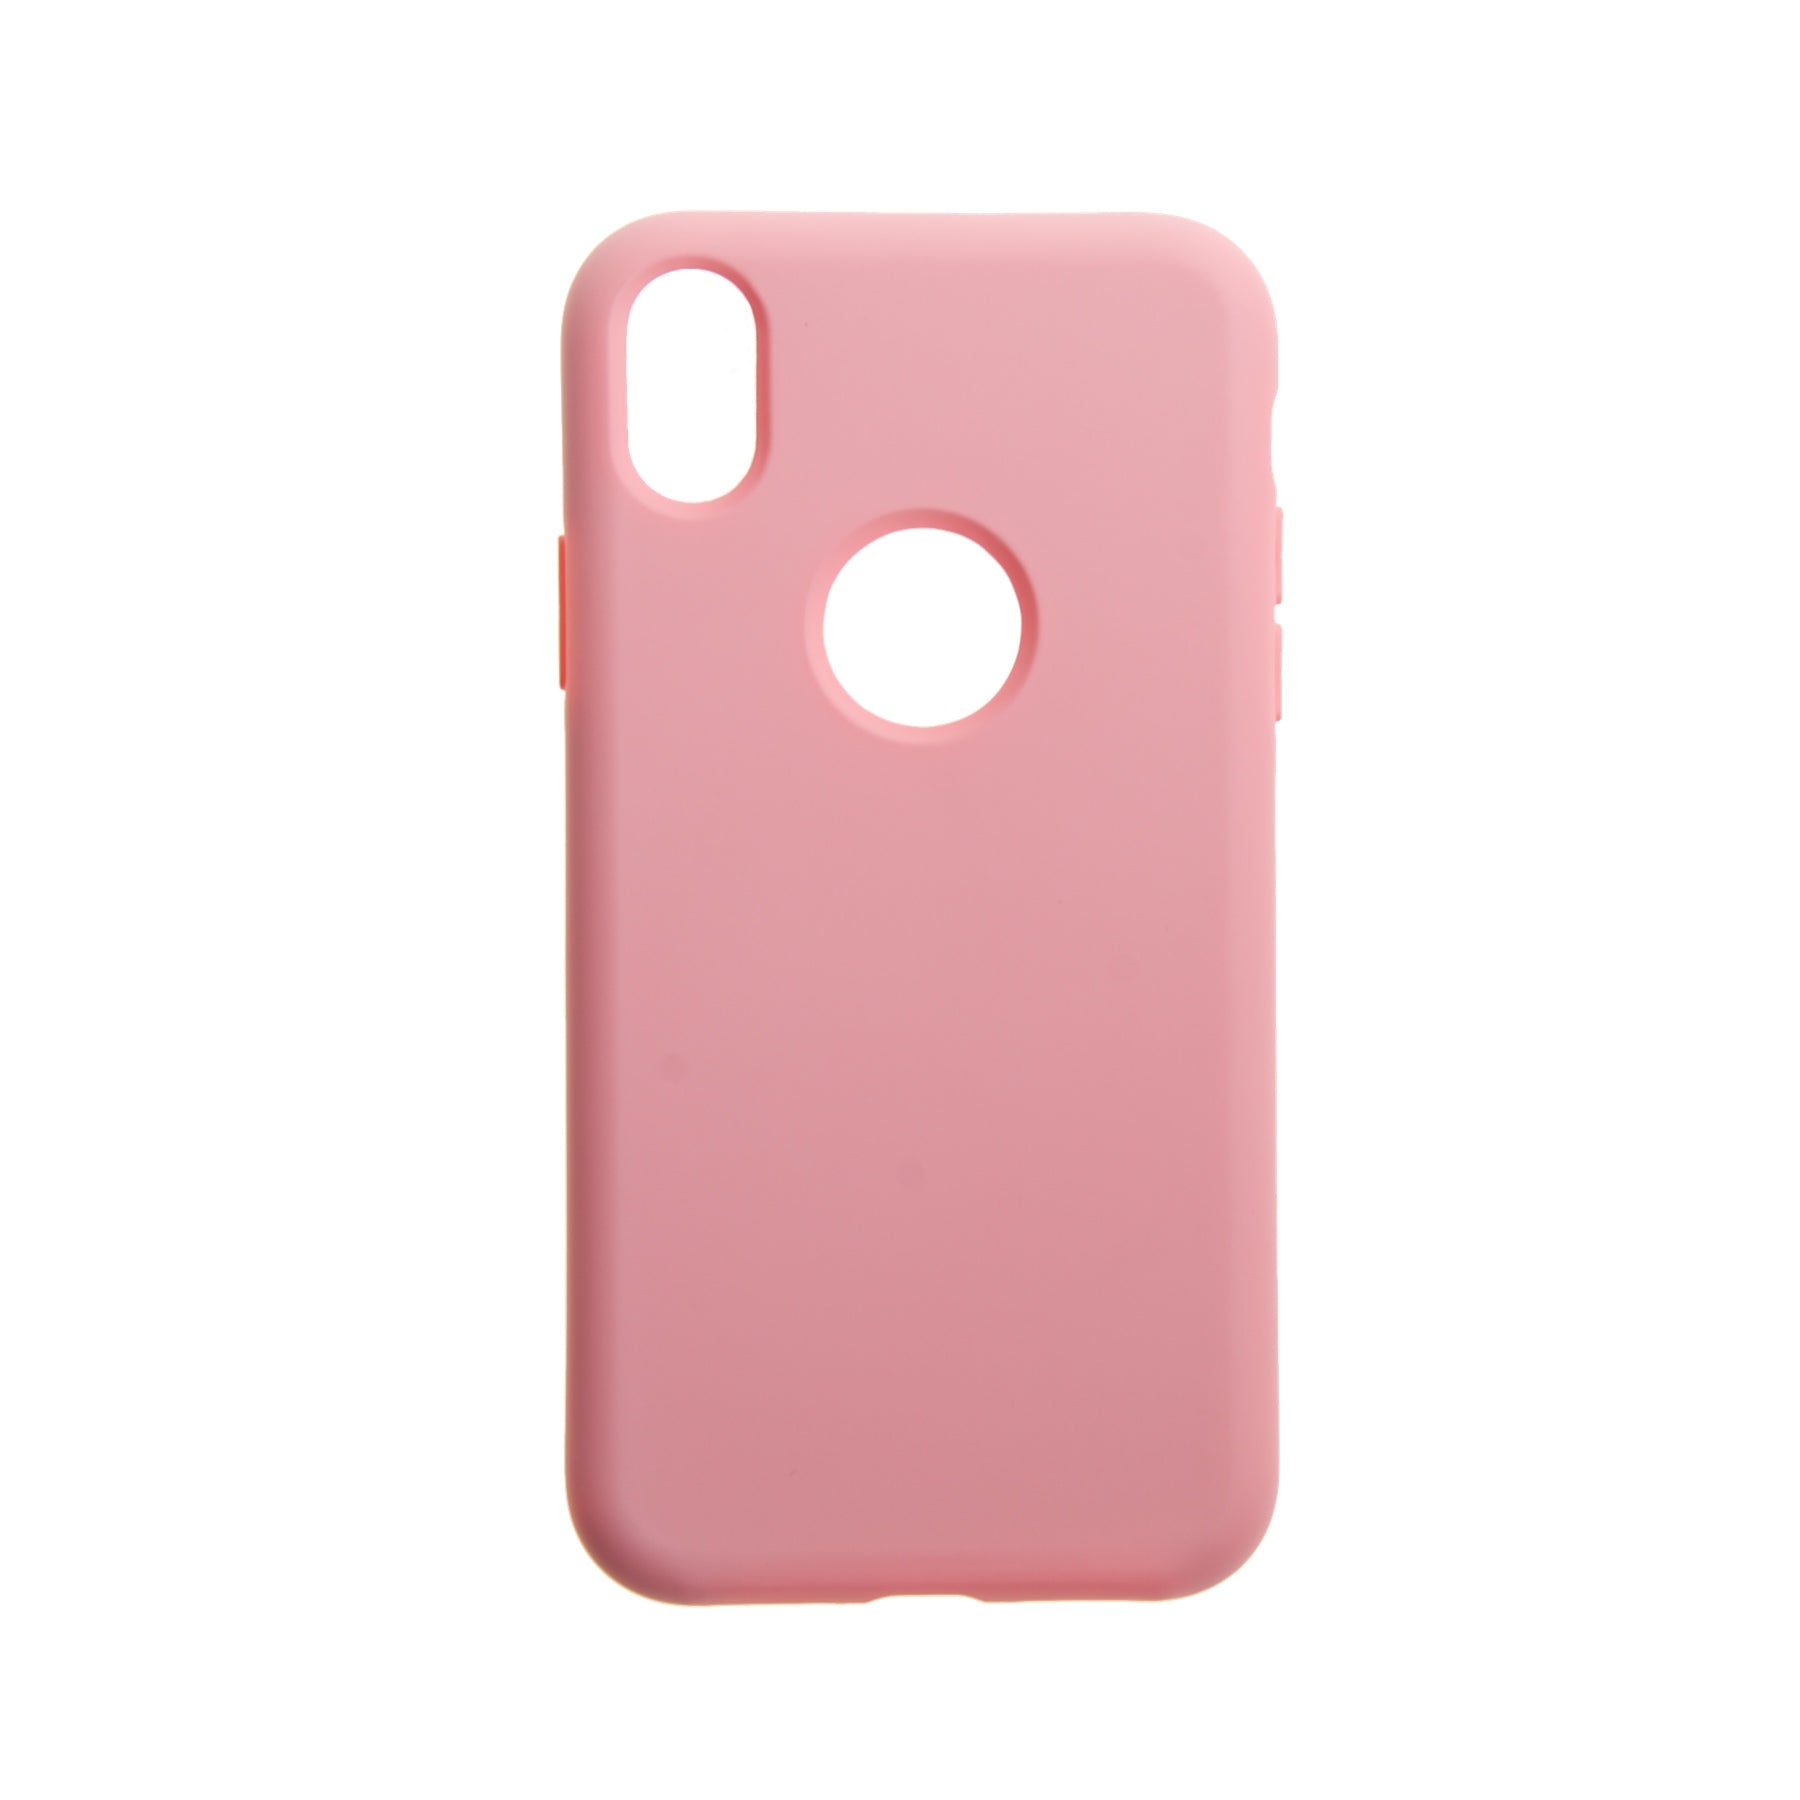 Estuche EL REY silicon rosado iphone xs